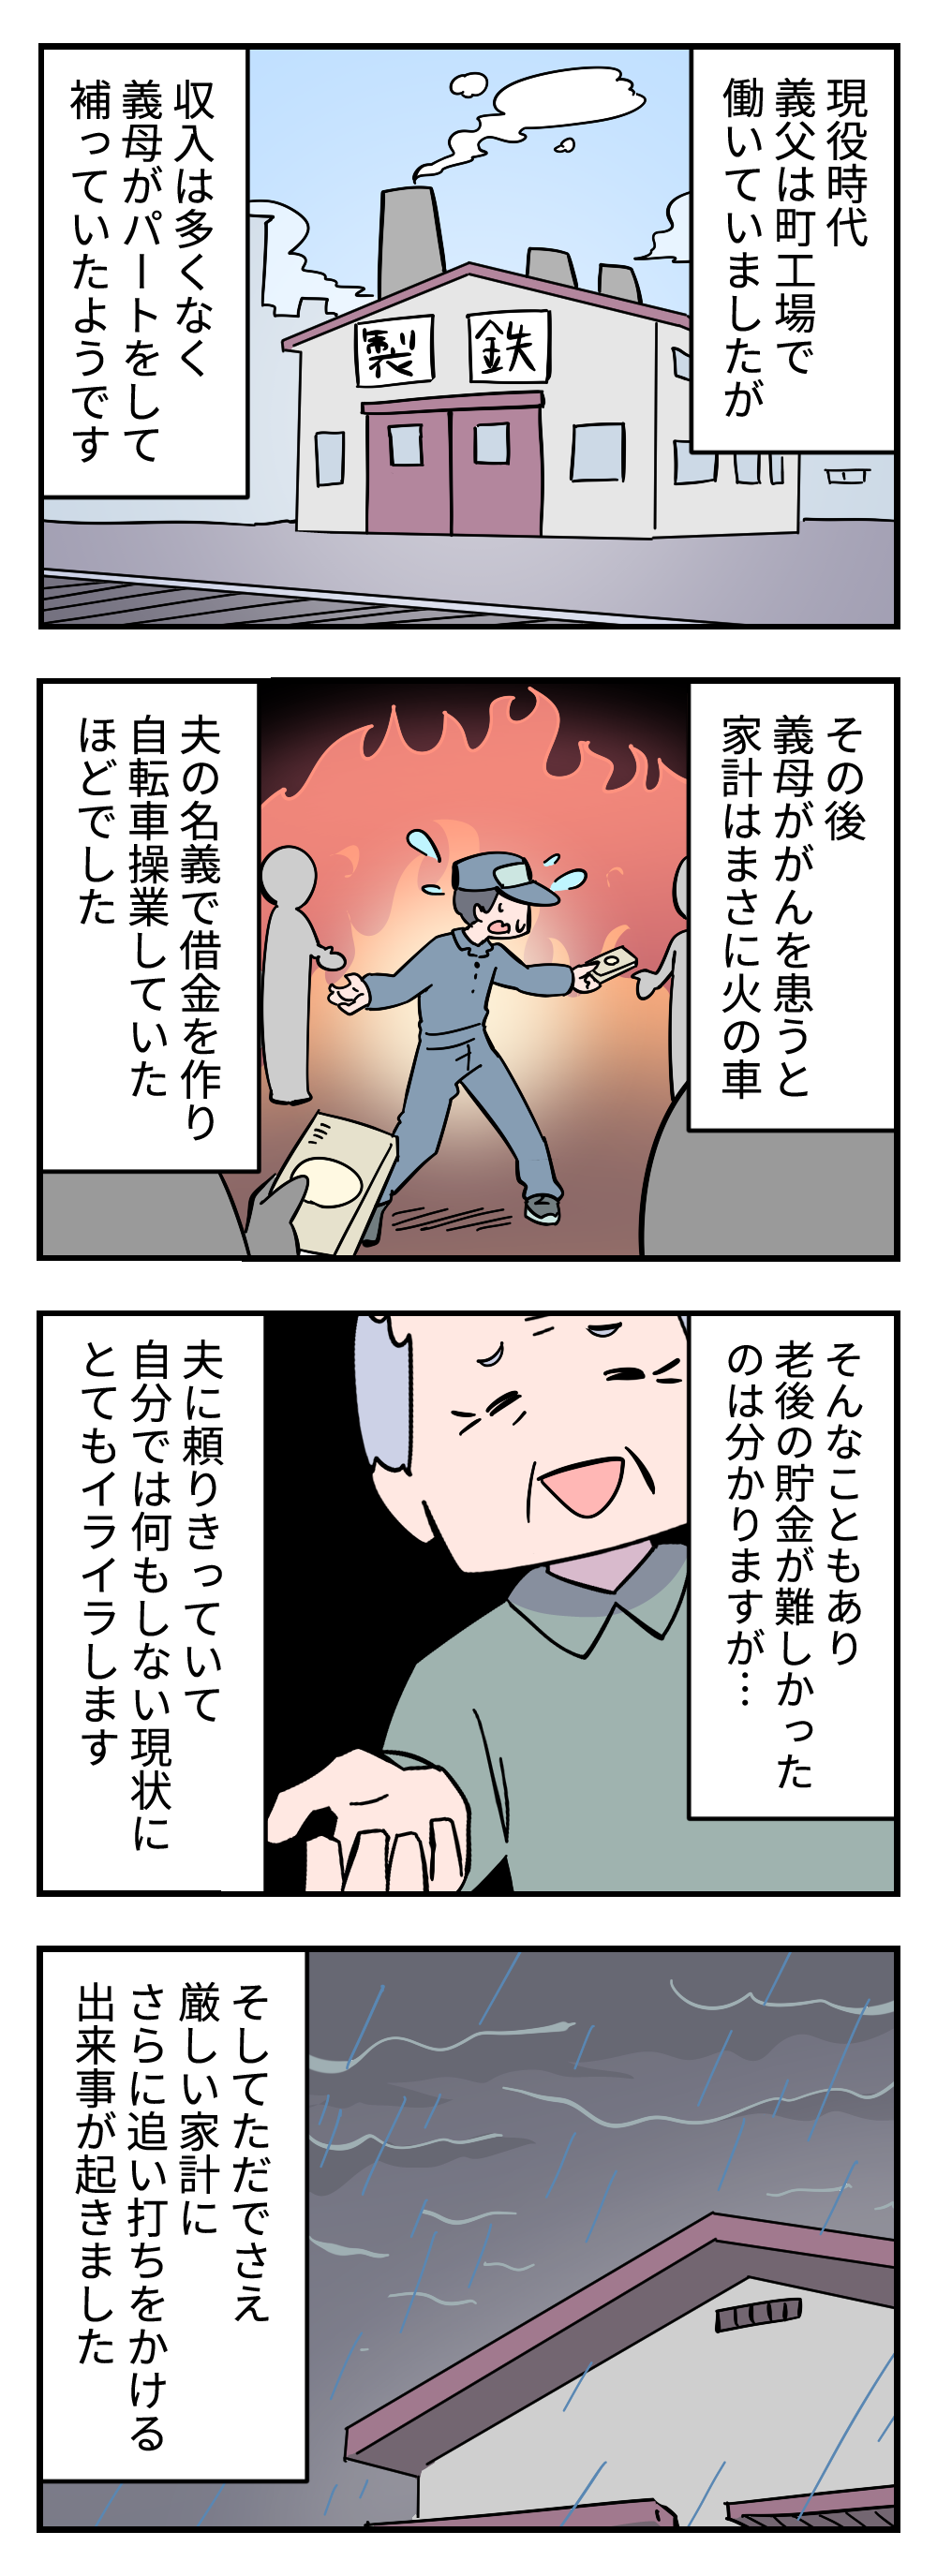 【漫画】「3万円貸してくれ」無職の夫とパートの私。そんな我が家に生活費をせがむ義父＜前編＞ 412_002.png